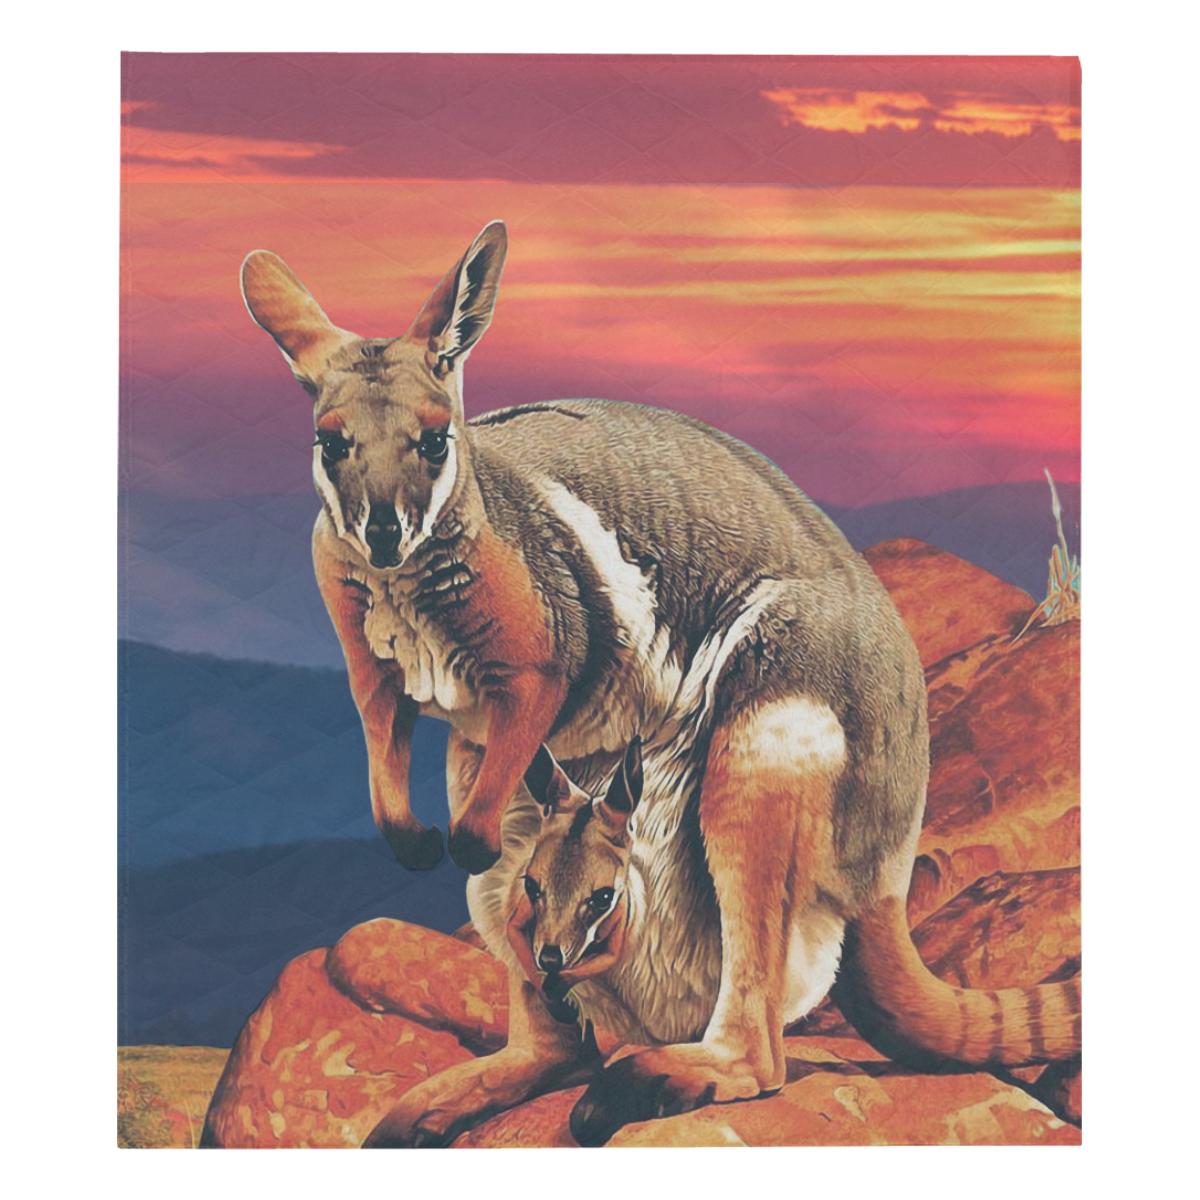 quilt-kangaroo-quilt-family-sunset